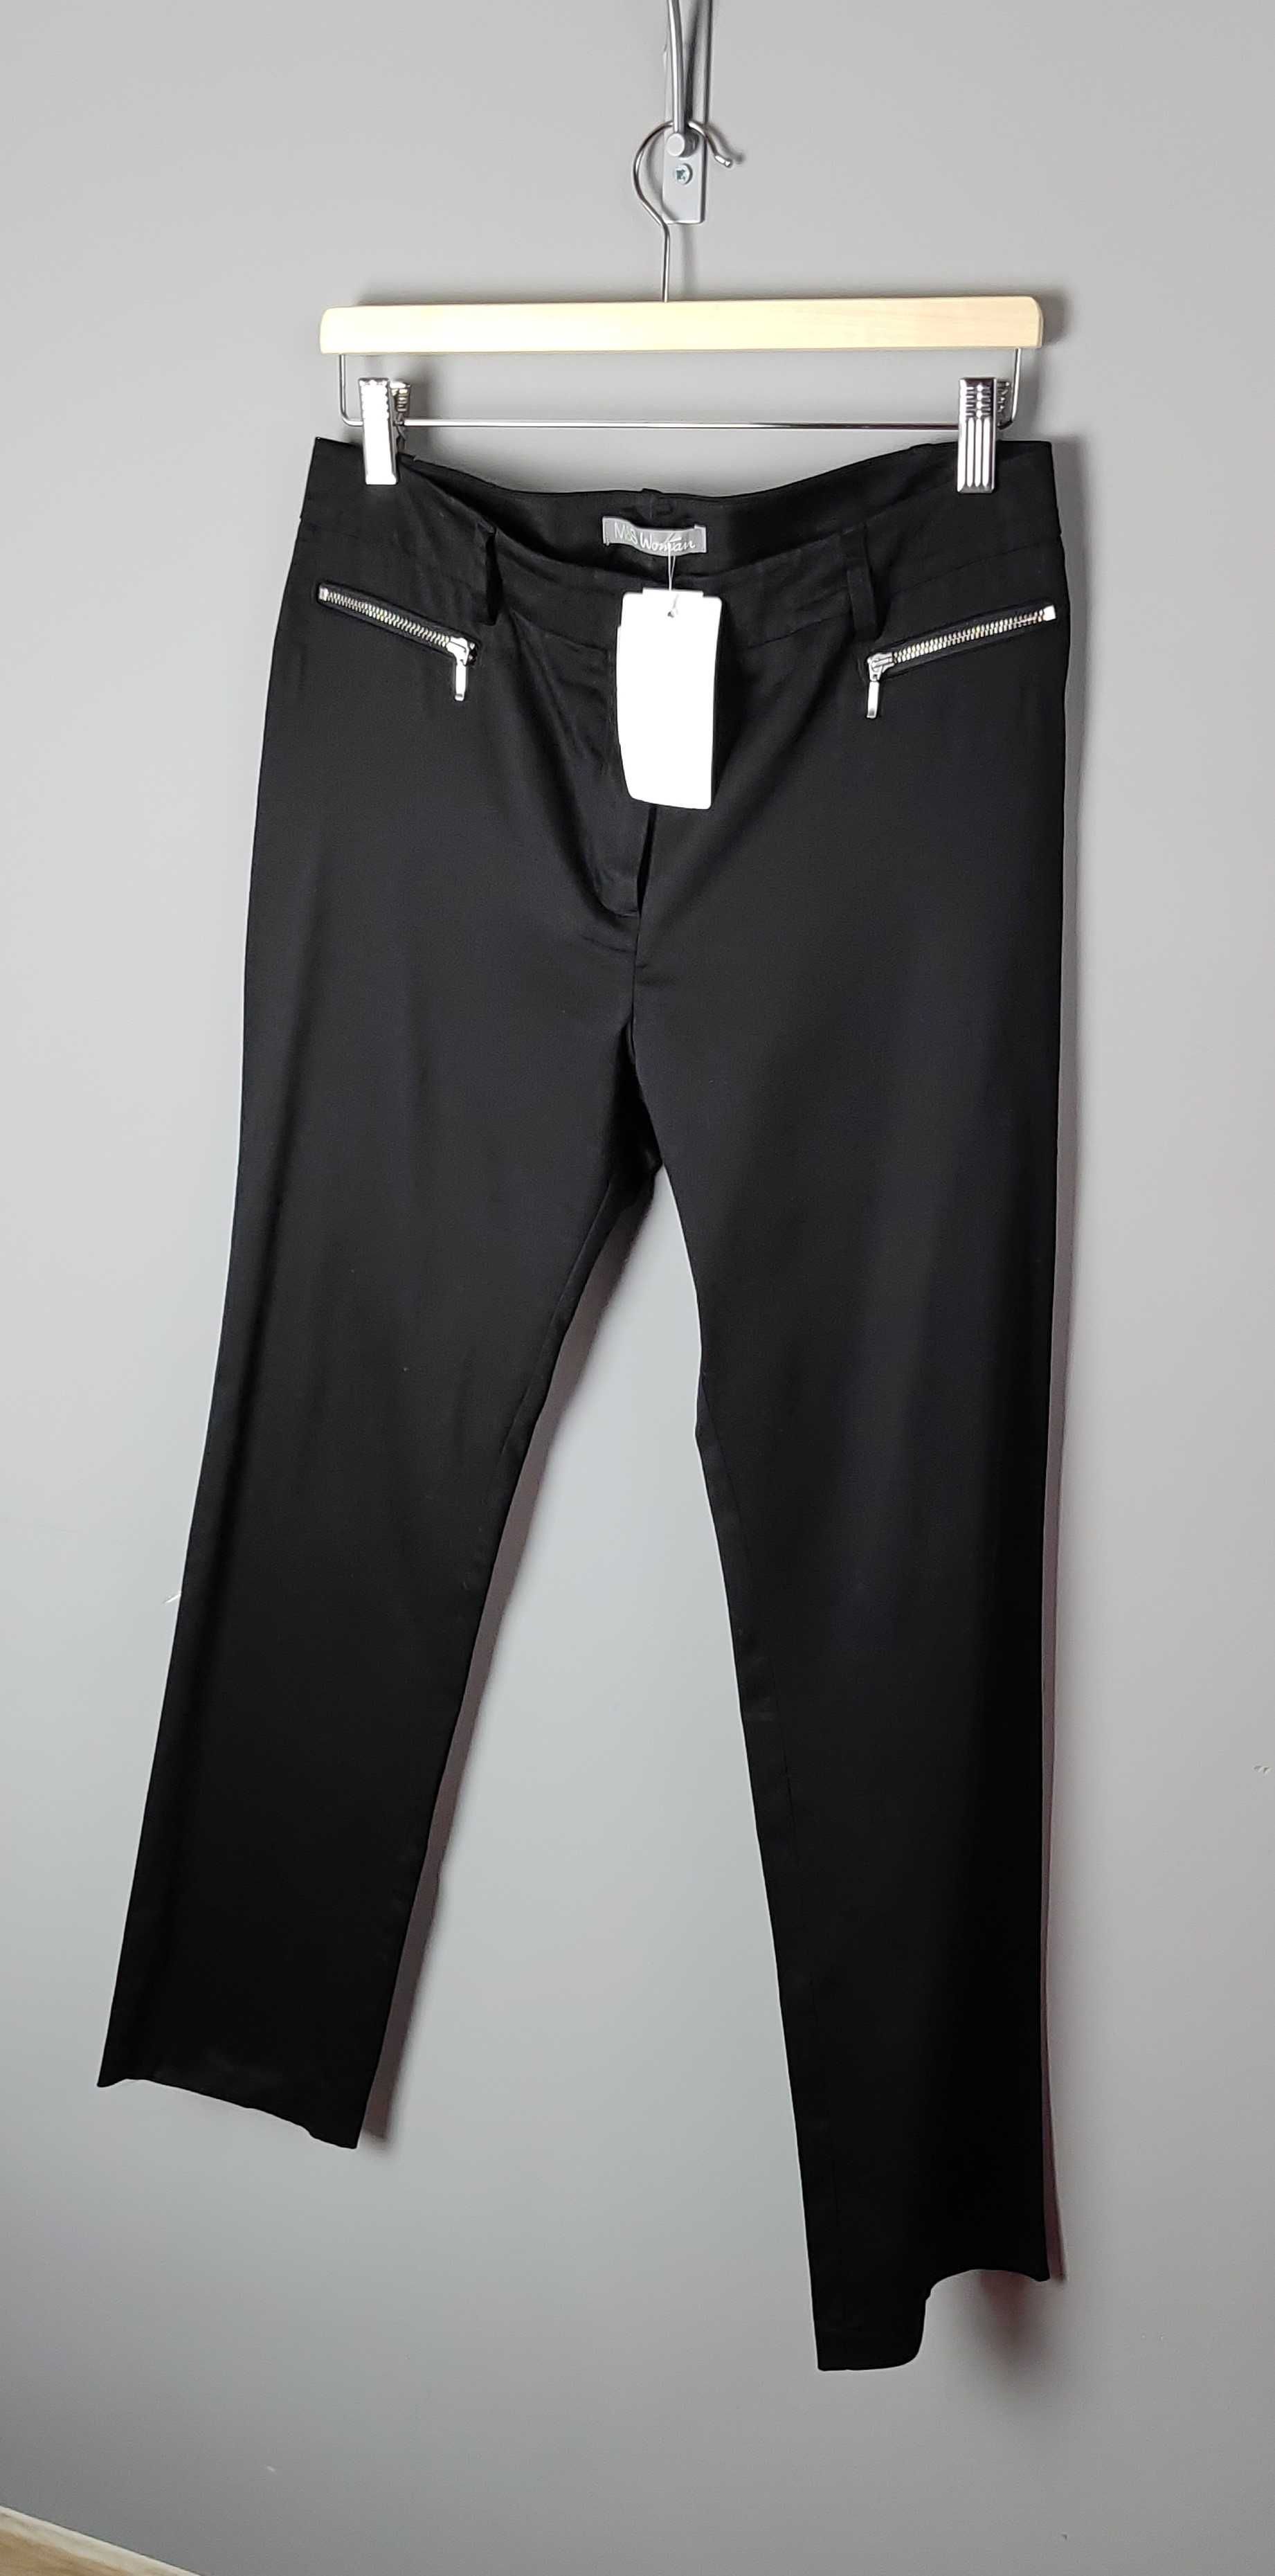 Spodnie czarne gładkie proste wysoki stan bawełna M&S Woman 40